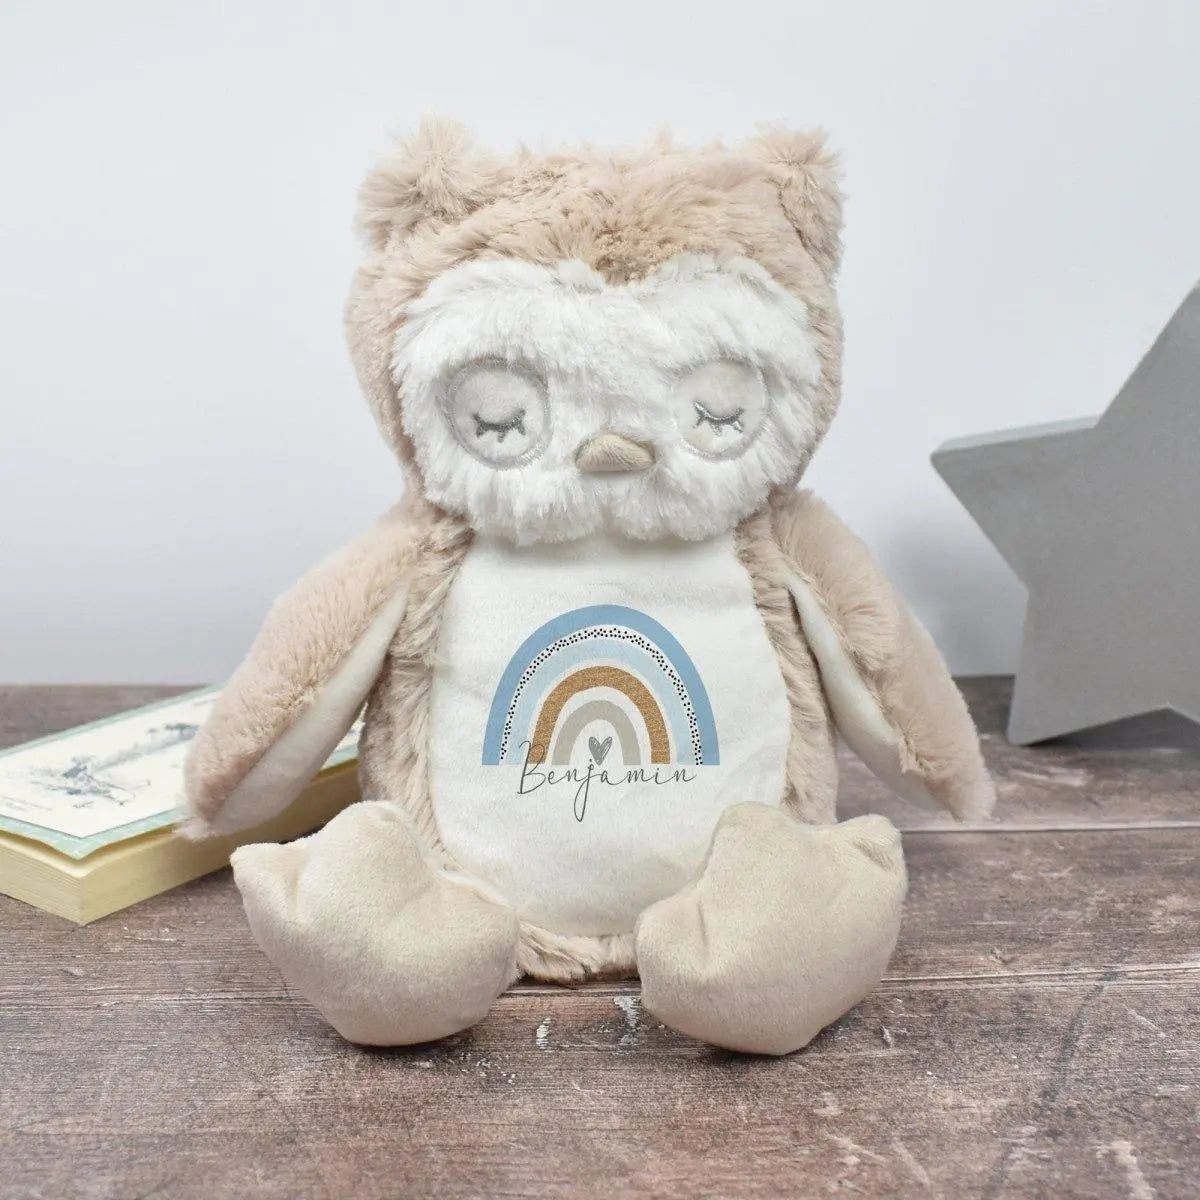 Personalised Owl Teddy, Blue Rainbow Teddy, New Baby Gift, Customised Cuddly Toy, Baby Boy Gift, Rainbow Nursery Decor, Soft Toy, Owl Teddy - Amy Lucy